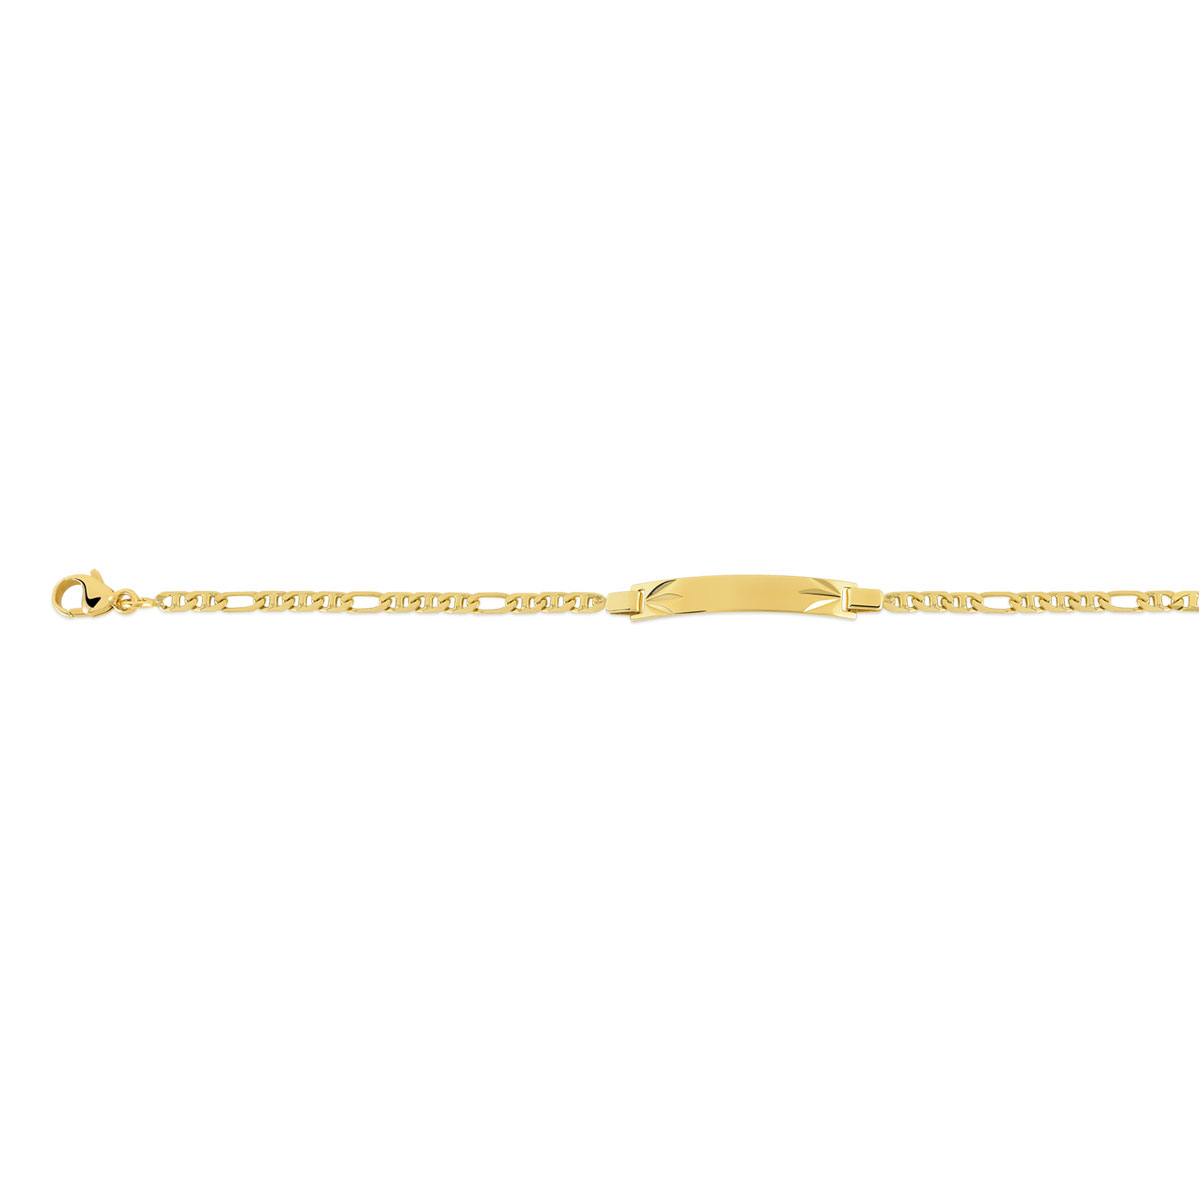 Bracelet identité bébé or 750 jaune maille marine personnalisable 14 cm